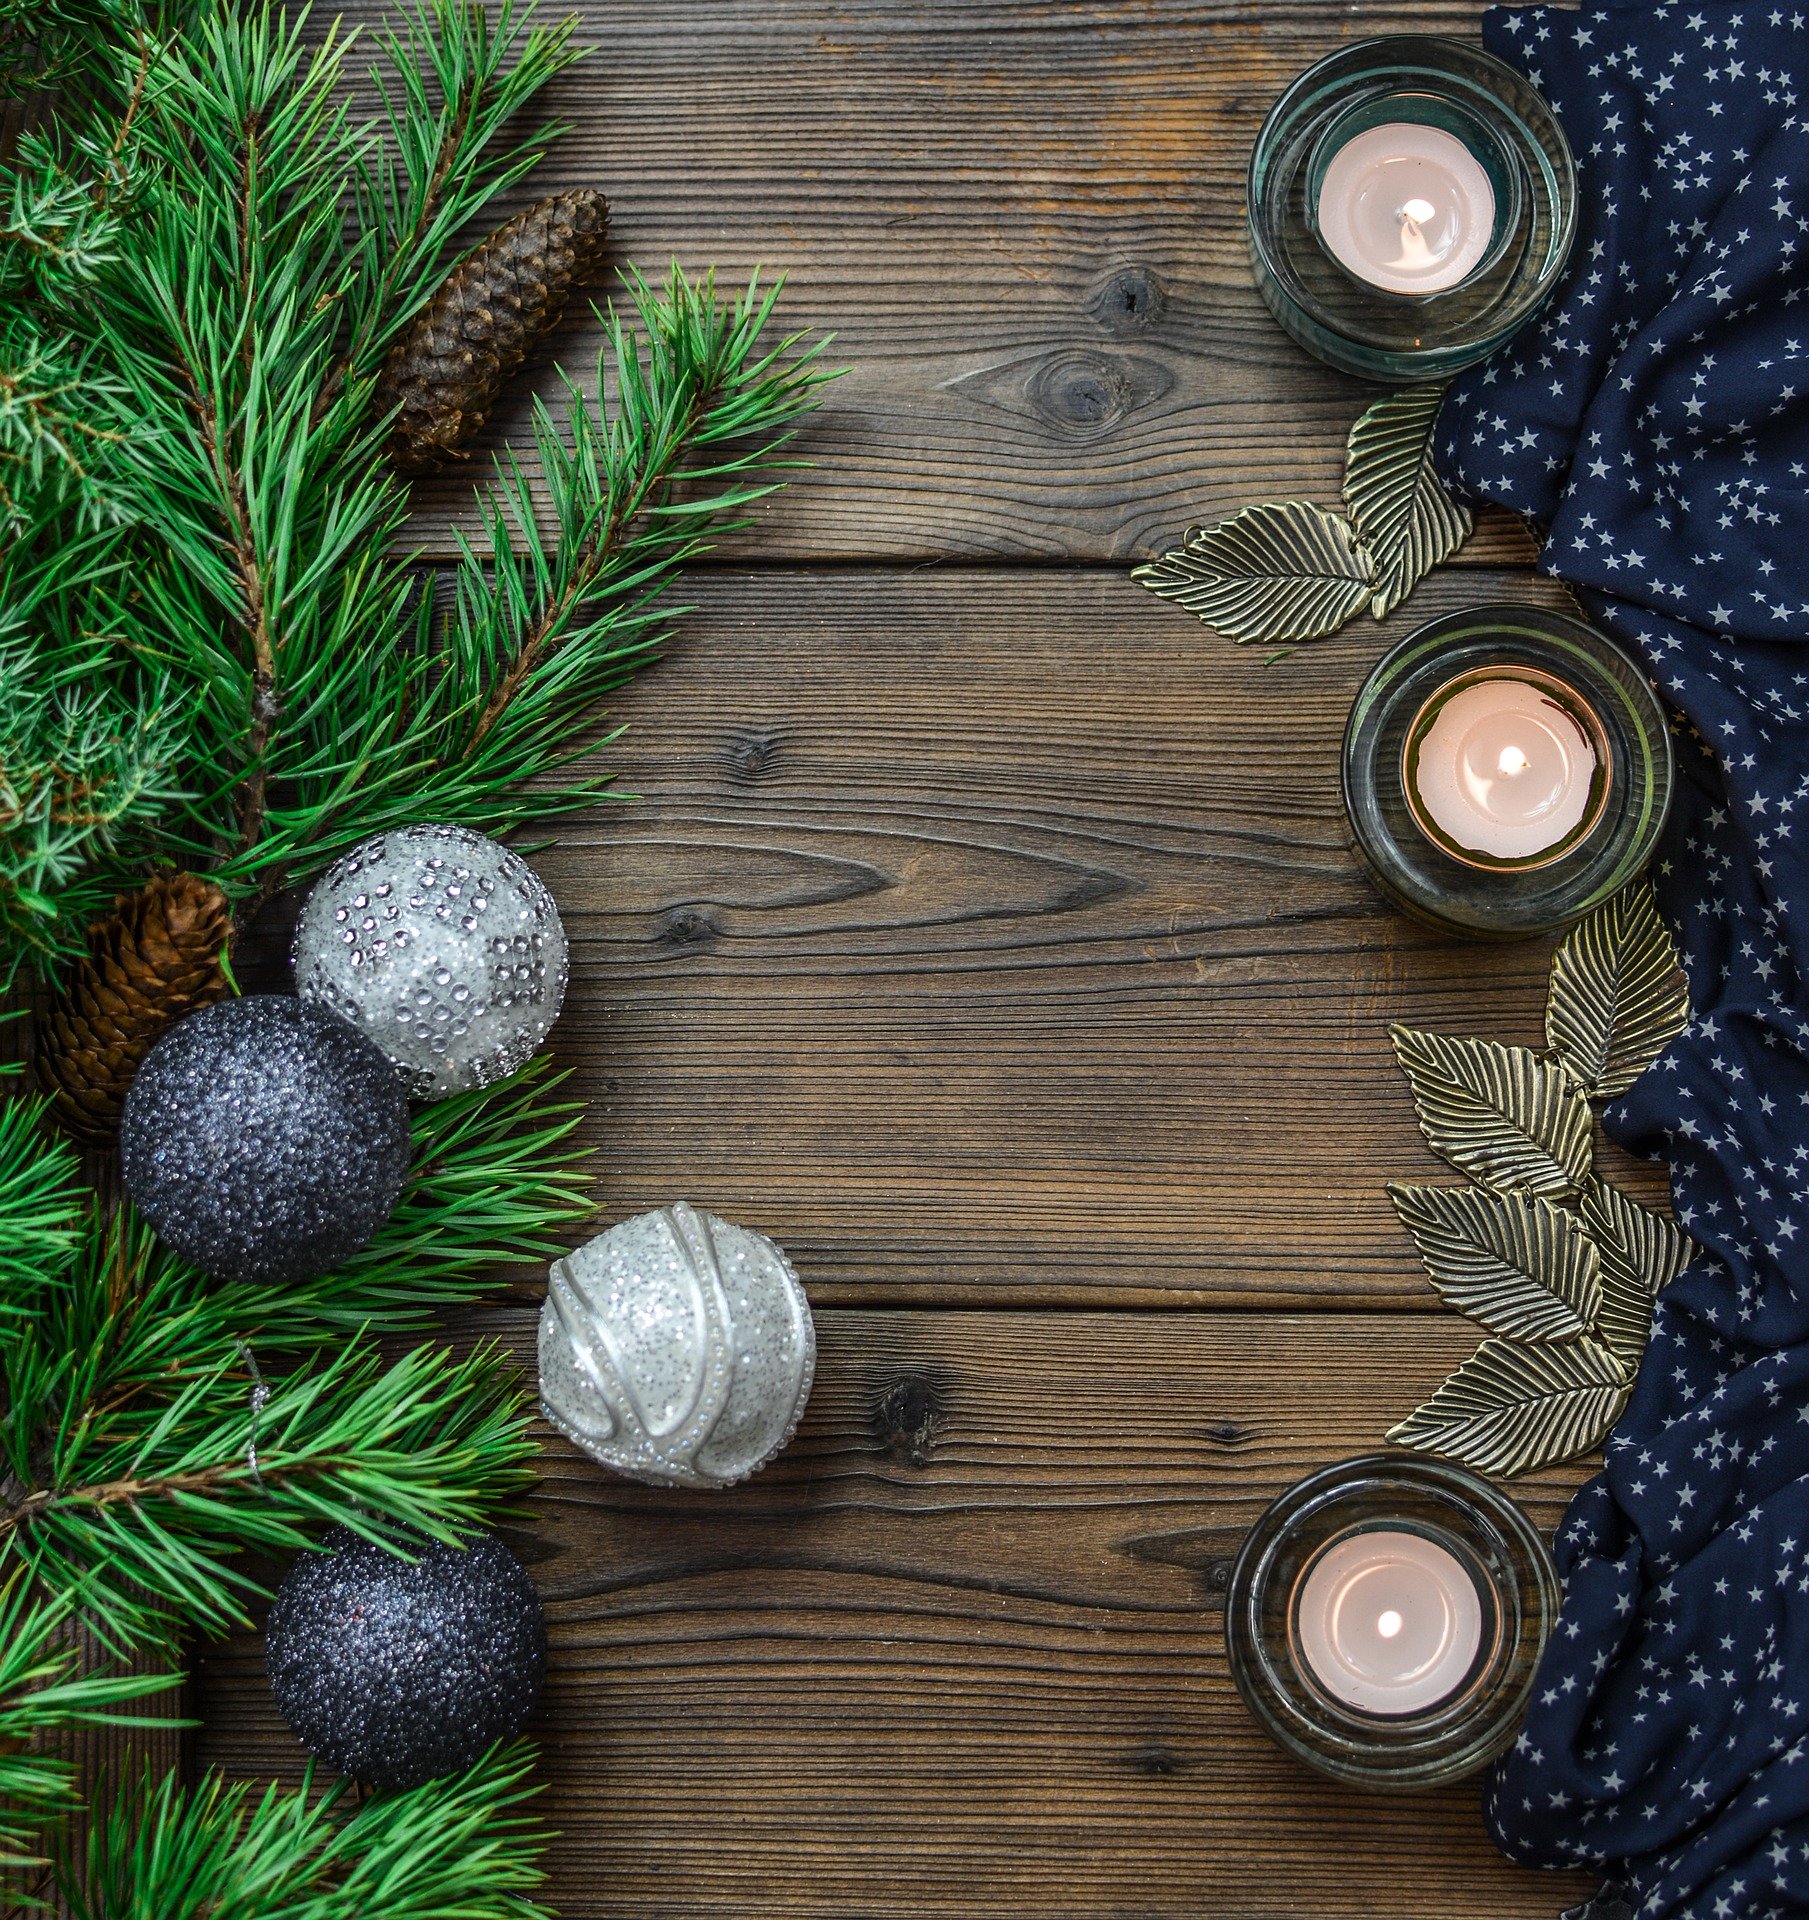 Velas y decoración navideña sobre madera. | Foto: Pixabay